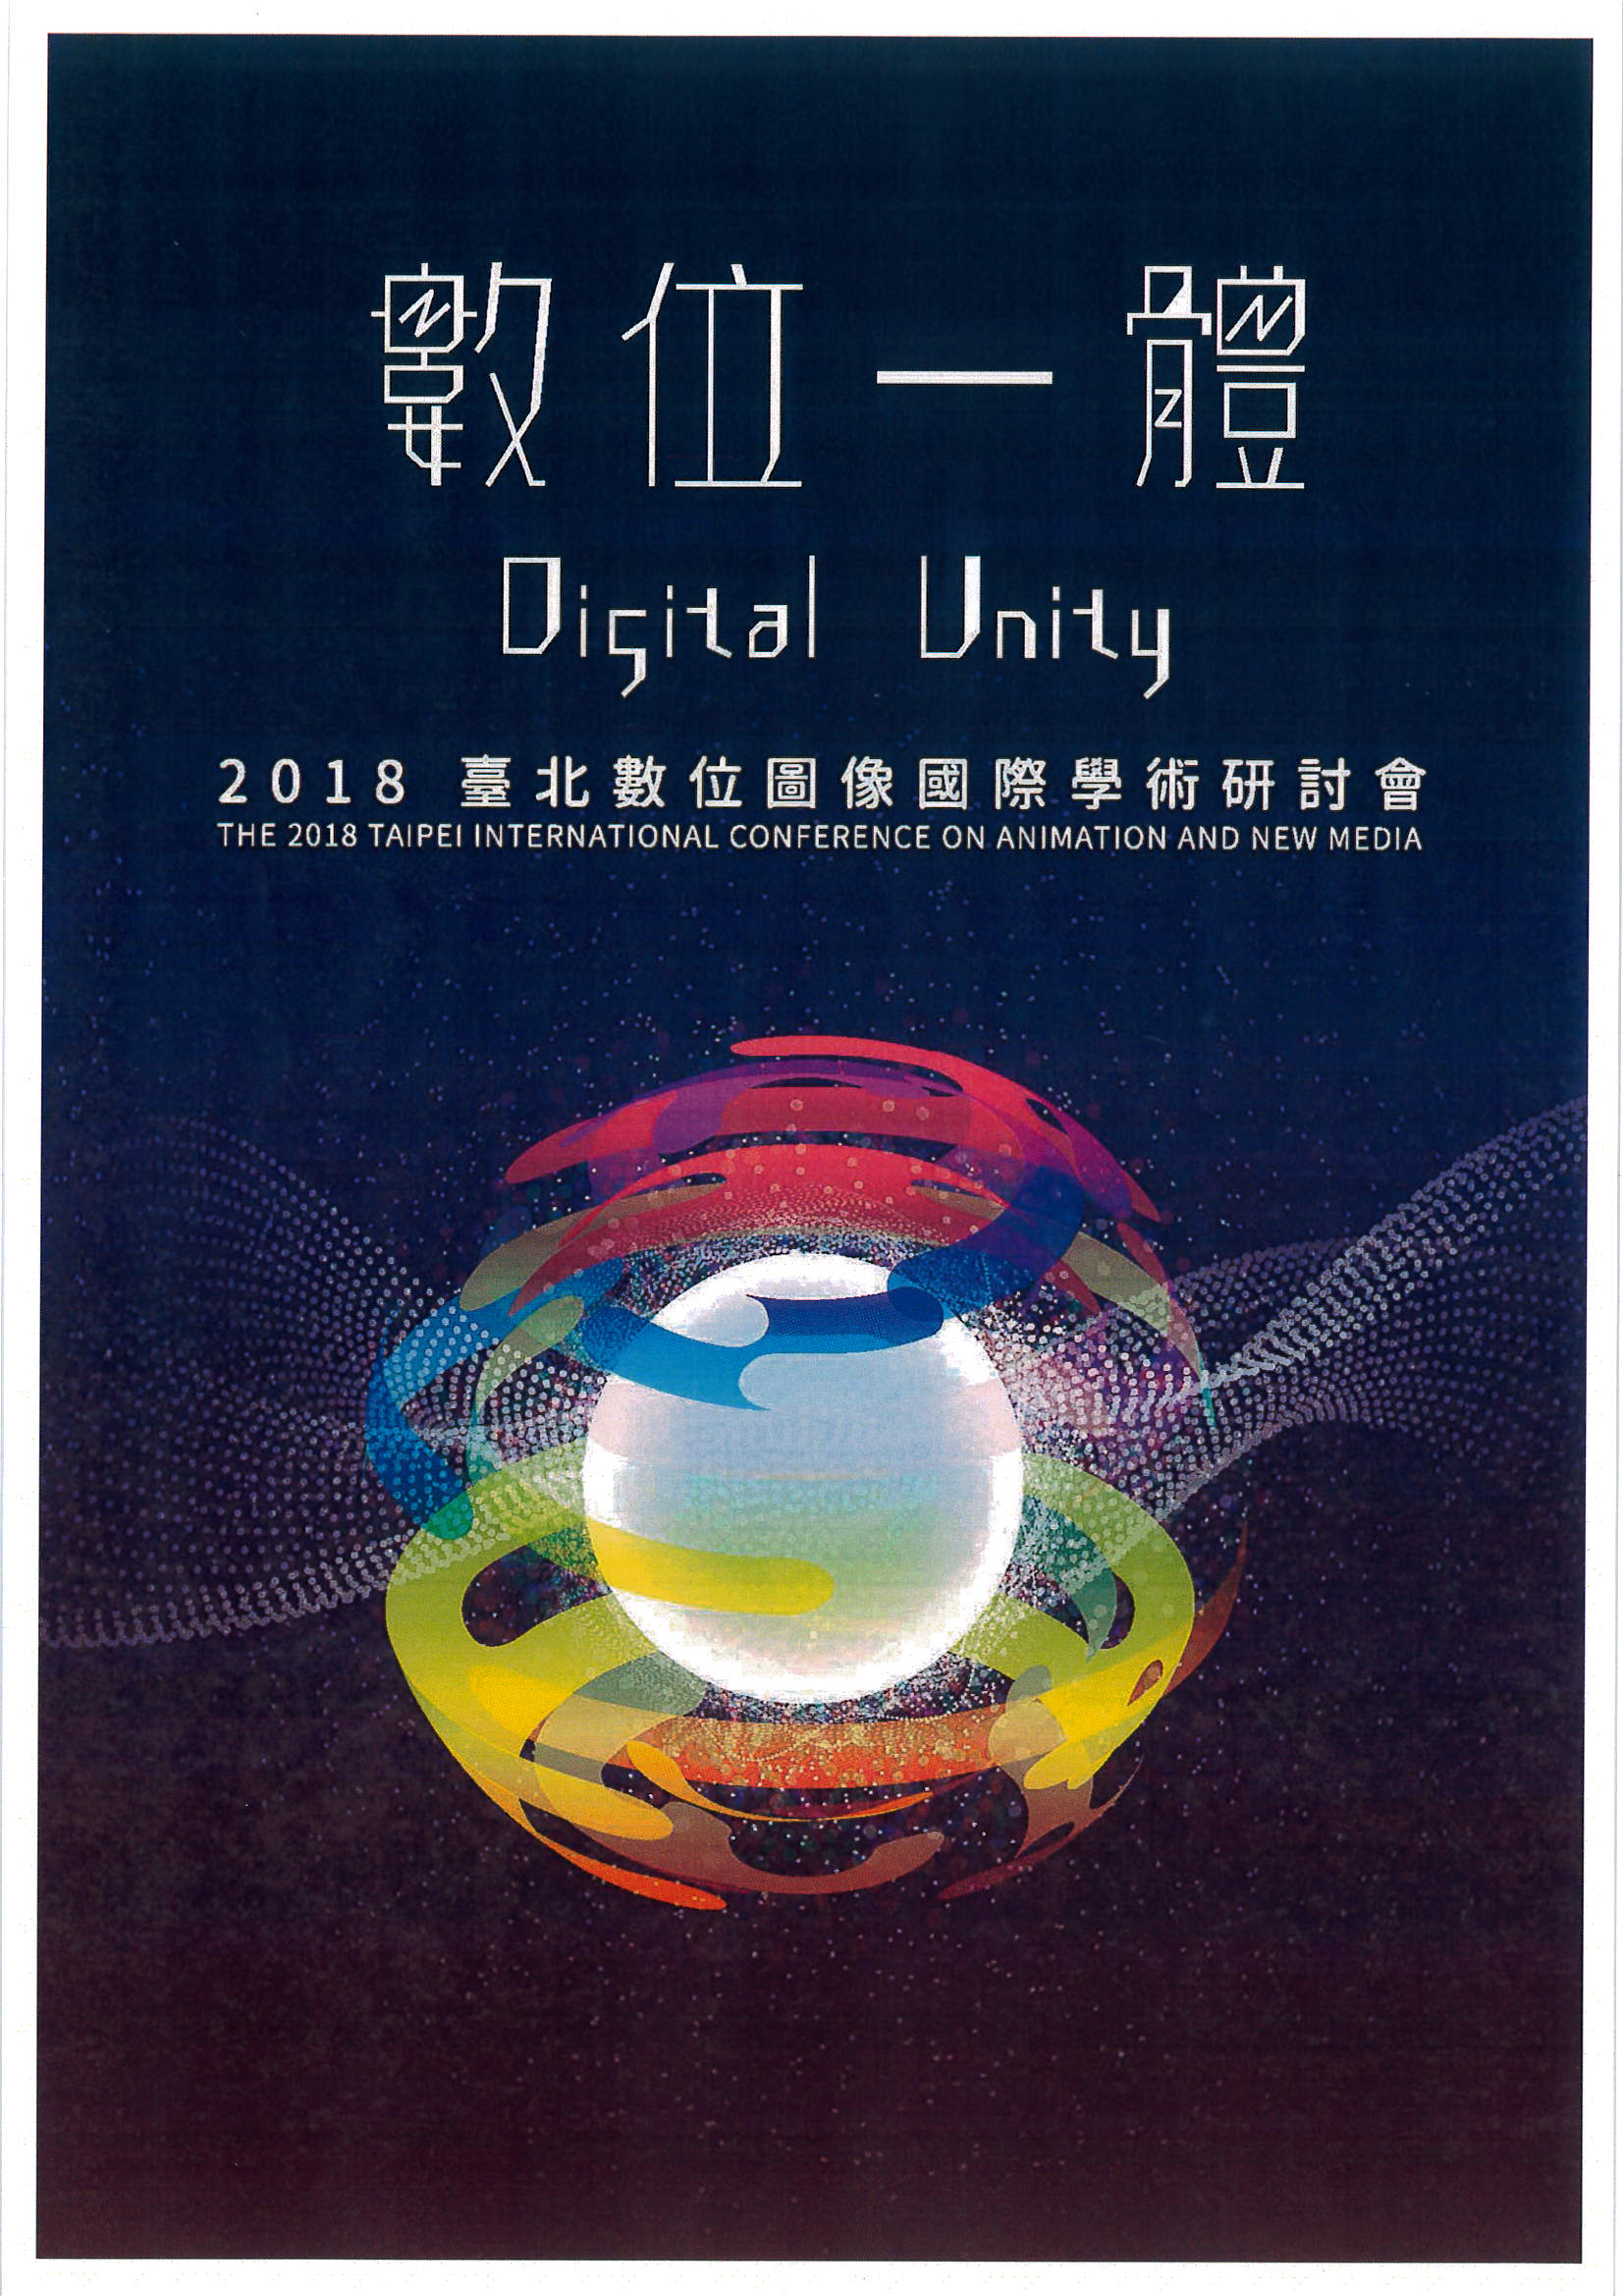 2018臺北數位圖像國際學術研討會「數位一體（Digital Unity）」